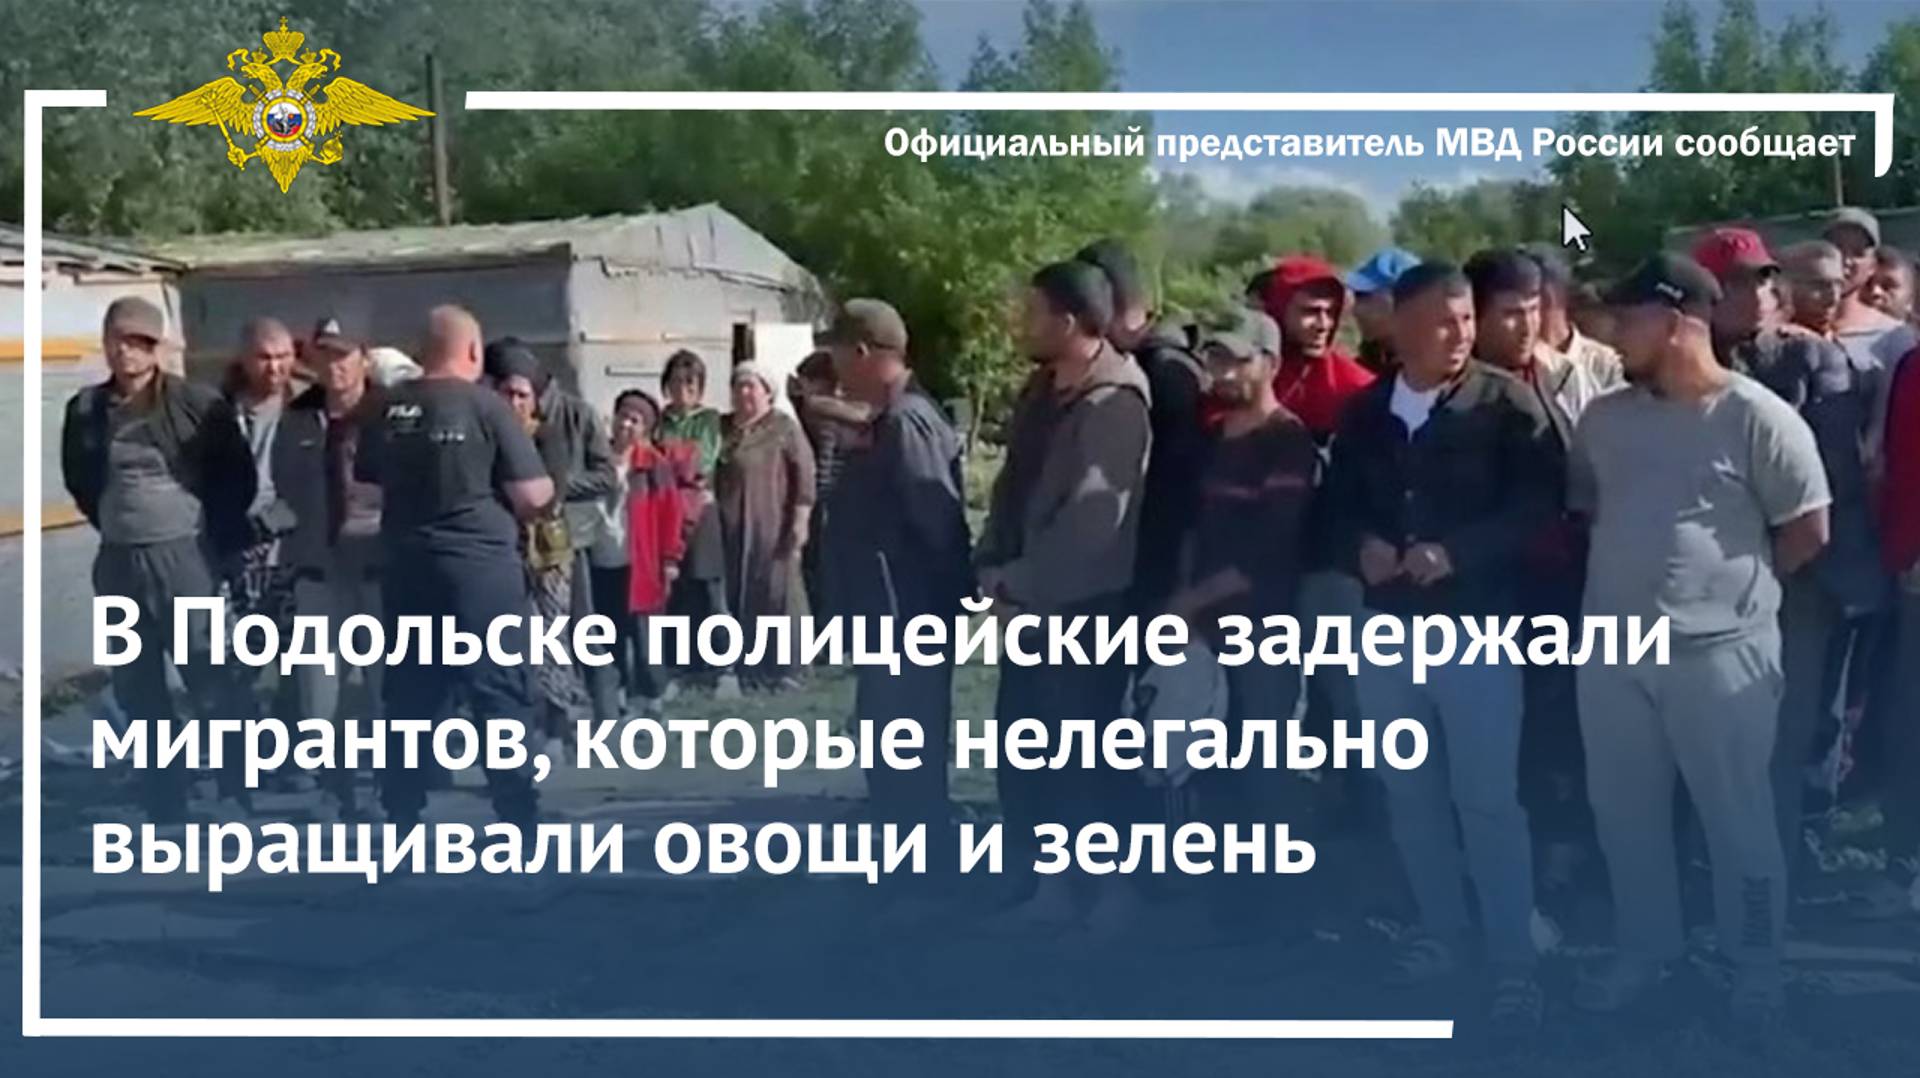 В Подольске полицейские задержали мигрантов, которые нелегально выращивали овощи и зелень